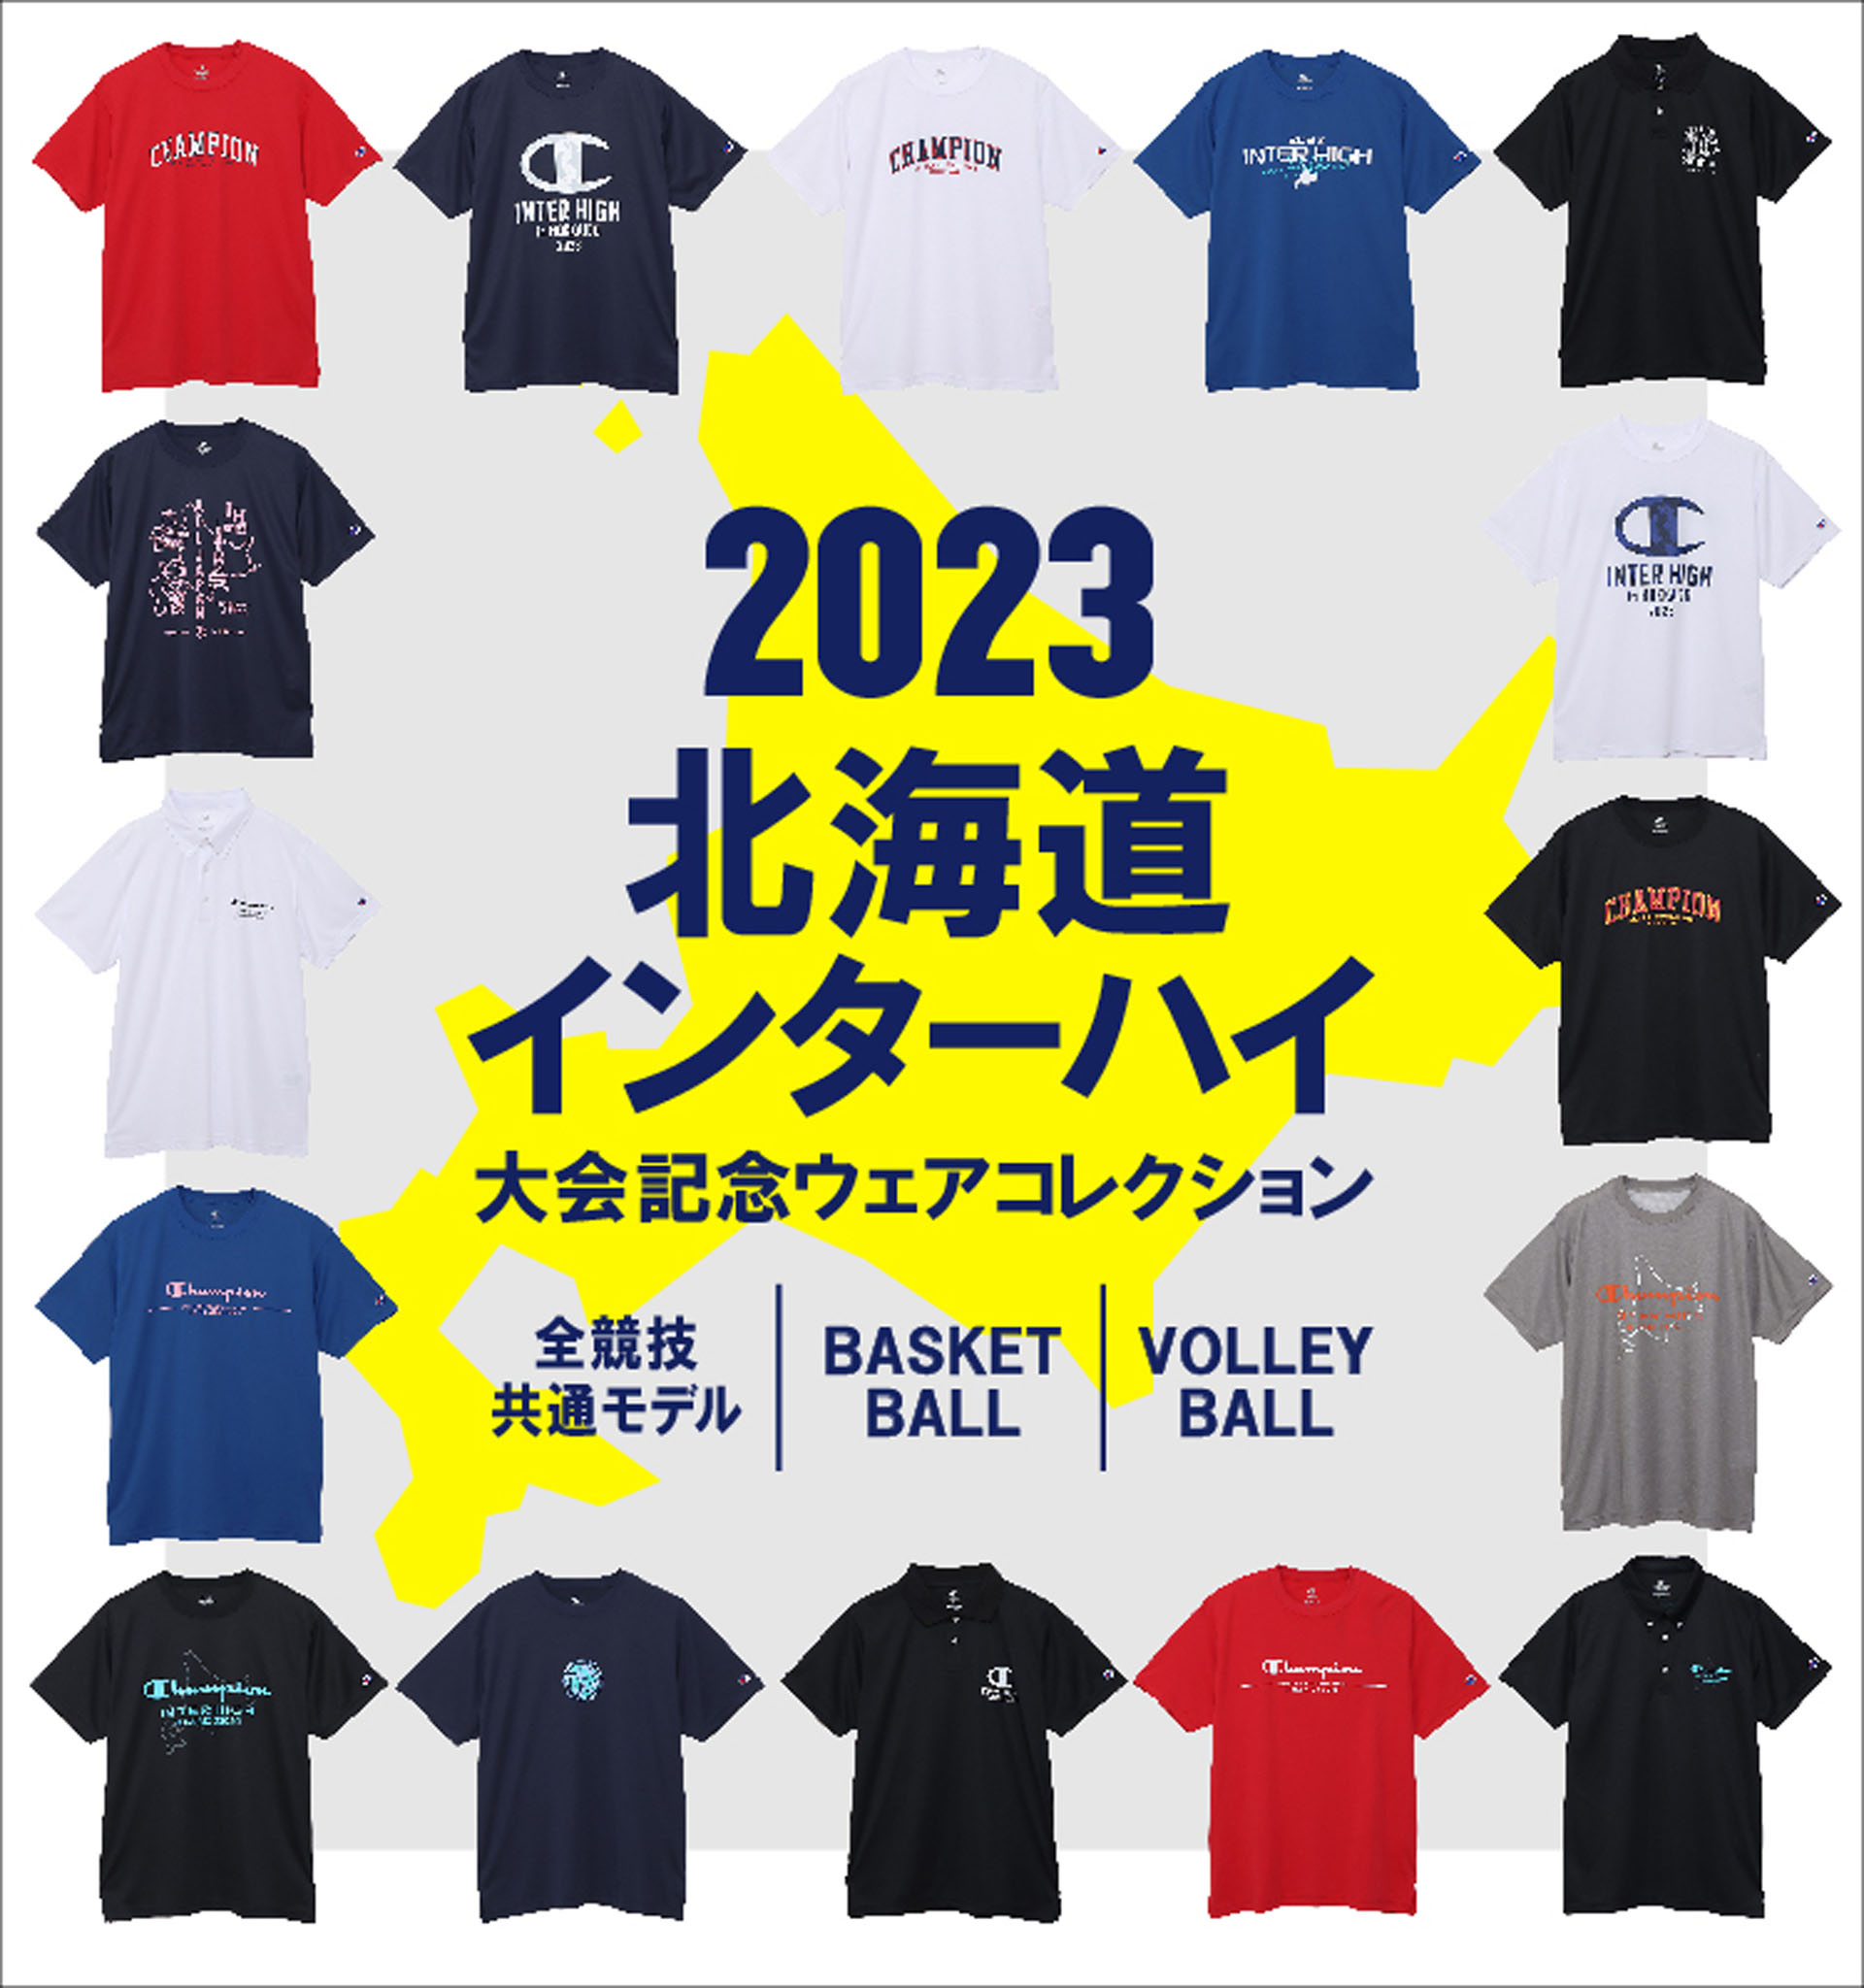 ジャパン クラブカップ バレーボール Tシャツ 2022 ファイテン 